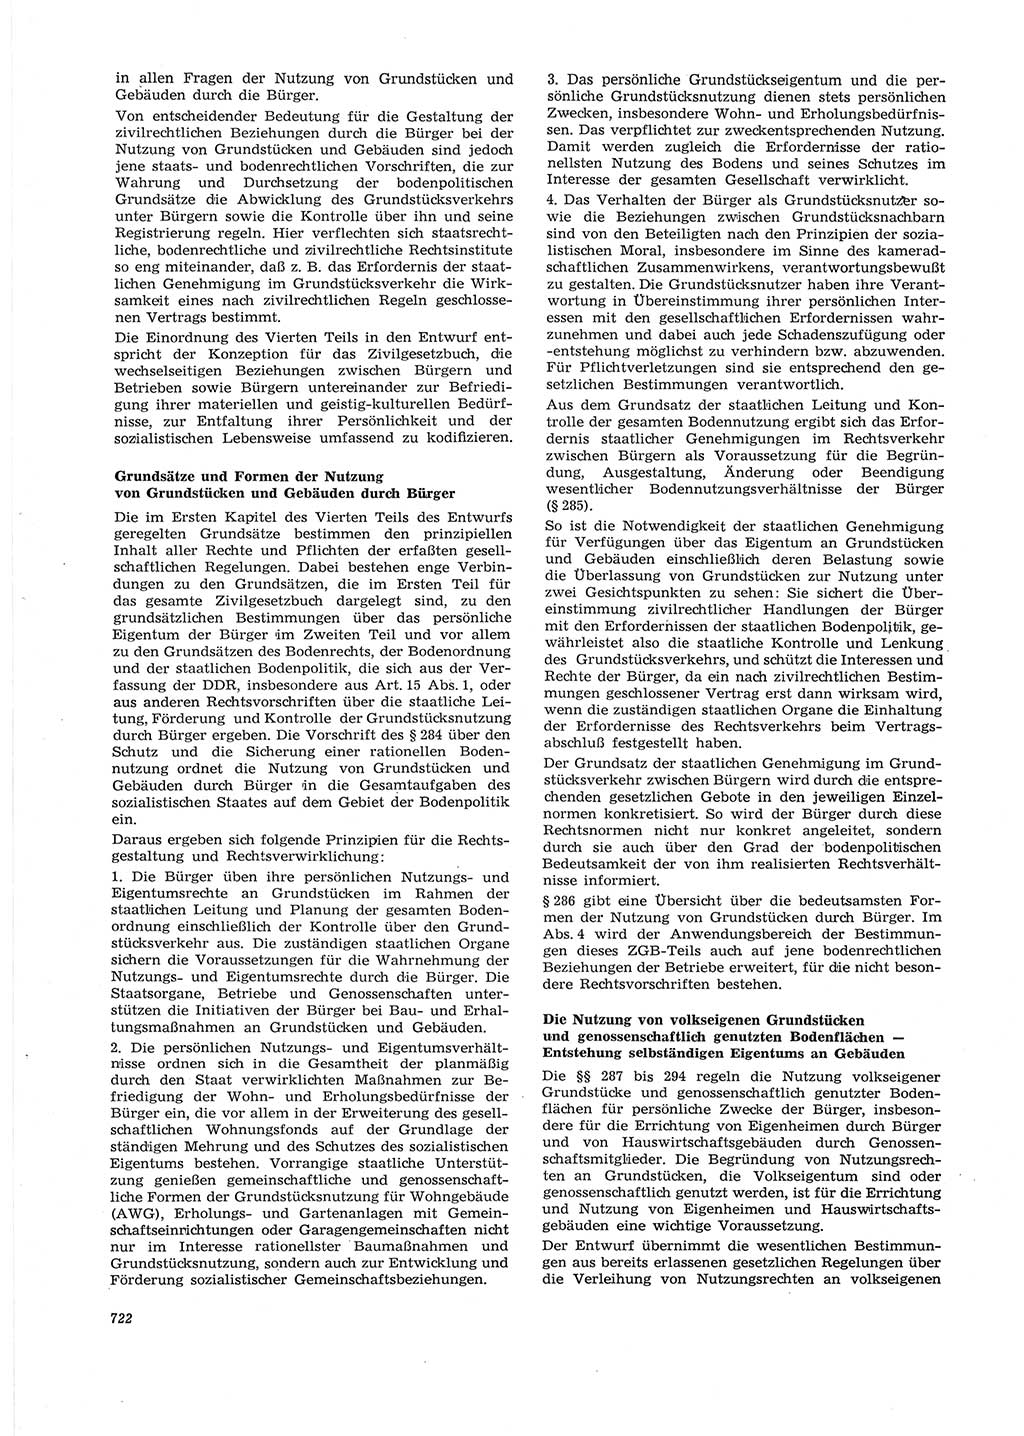 Neue Justiz (NJ), Zeitschrift für Recht und Rechtswissenschaft [Deutsche Demokratische Republik (DDR)], 28. Jahrgang 1974, Seite 722 (NJ DDR 1974, S. 722)